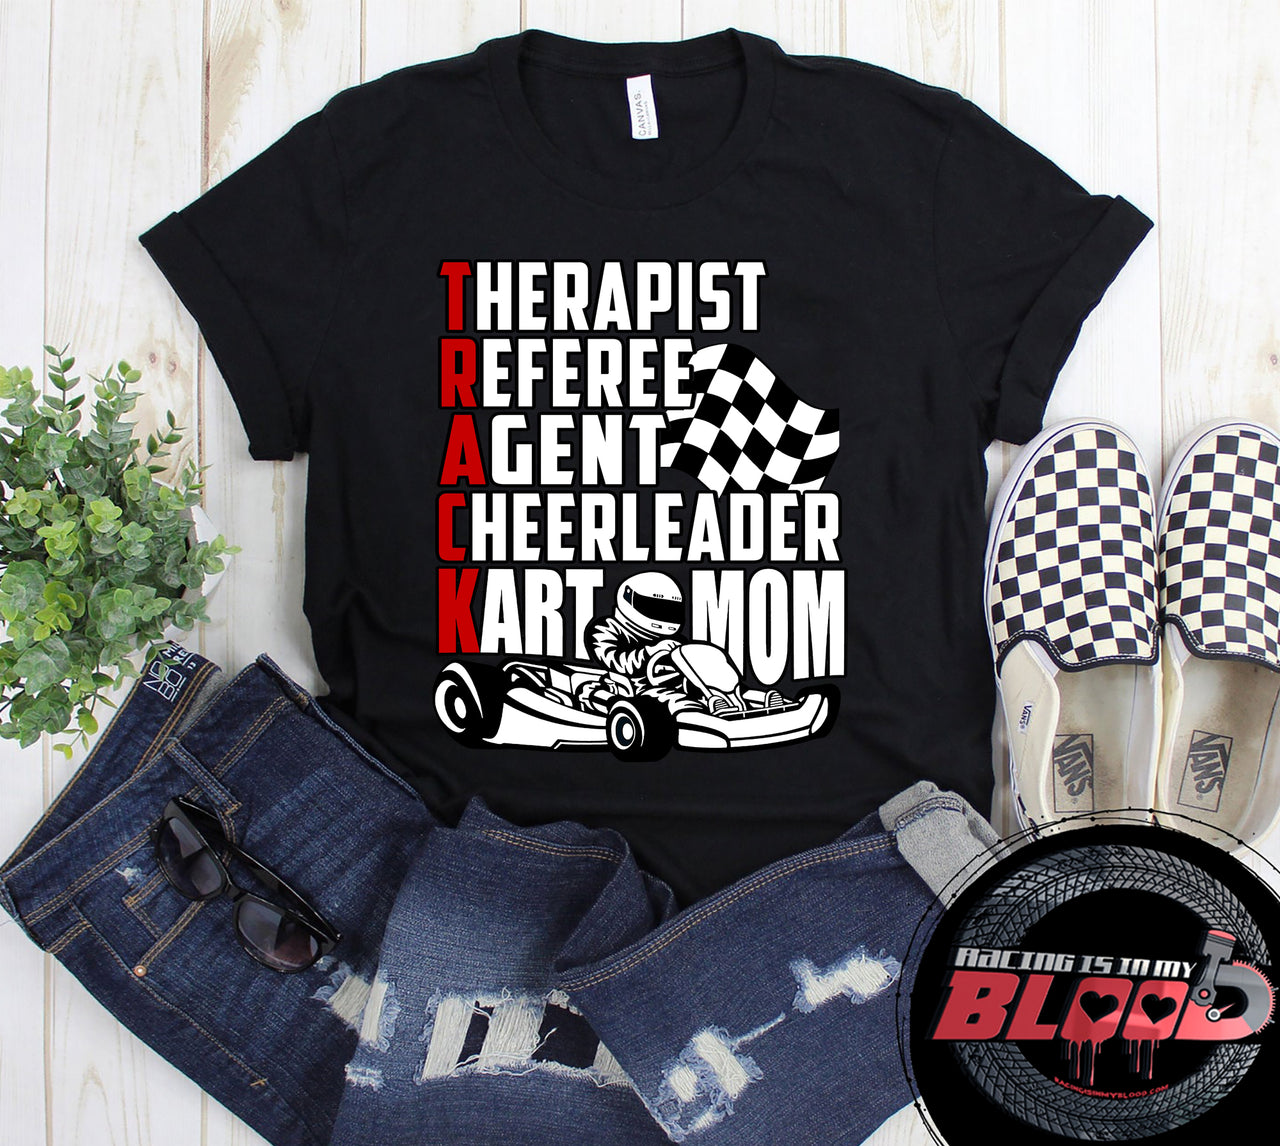 go Kart racing mom t-shirts